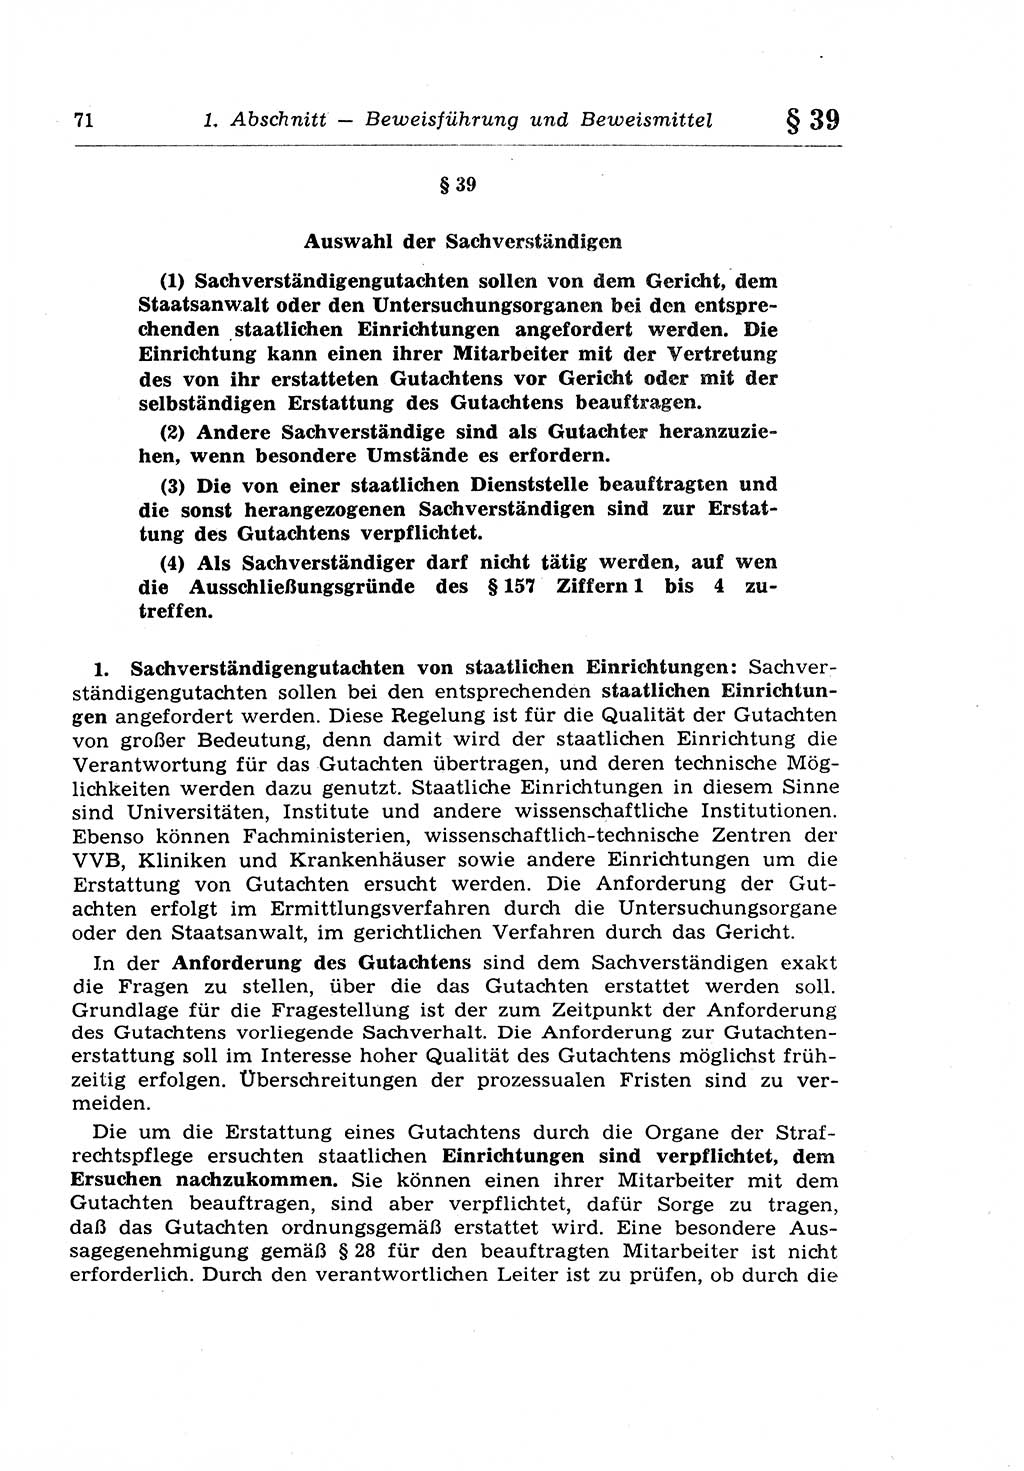 Strafprozeßrecht der DDR (Deutsche Demokratische Republik), Lehrkommentar zur Strafprozeßordnung (StPO) 1968, Seite 71 (Strafprozeßr. DDR Lehrkomm. StPO 19688, S. 71)